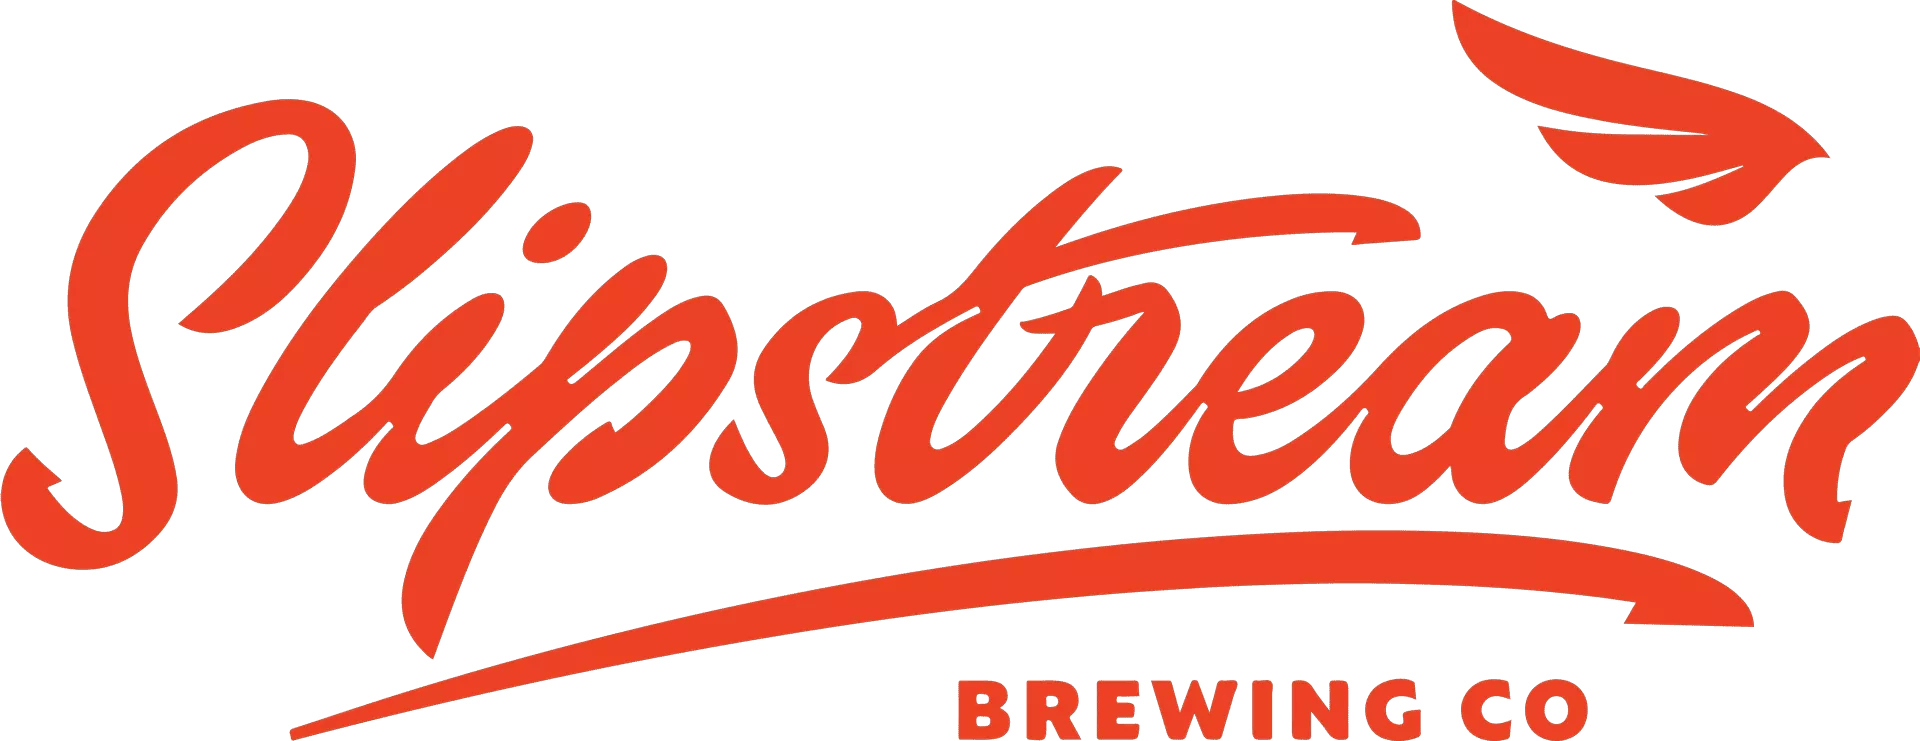 スリップストリームビール工場ロゴ